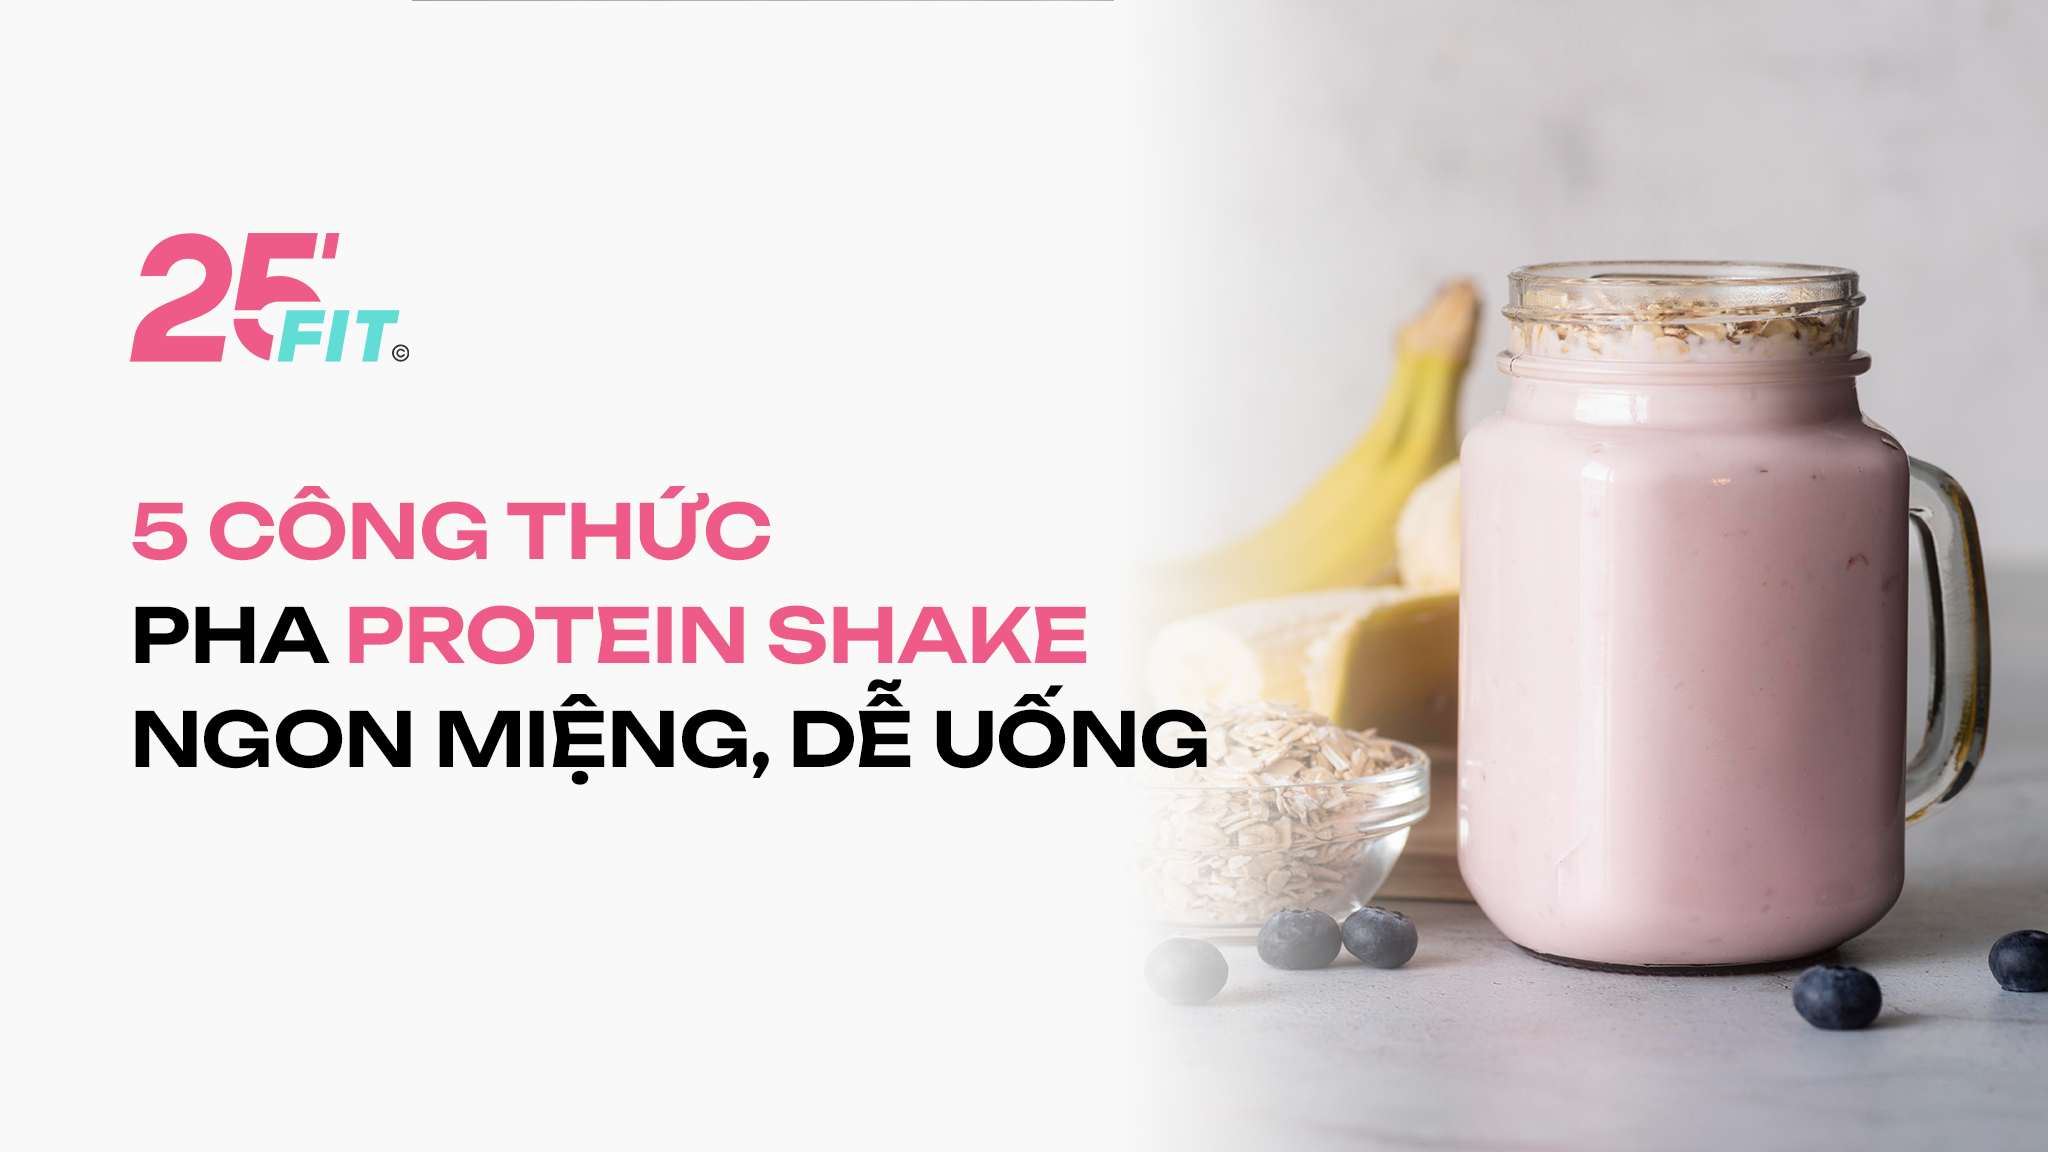 5 công thức pha protein shake ngon miệng dễ uống